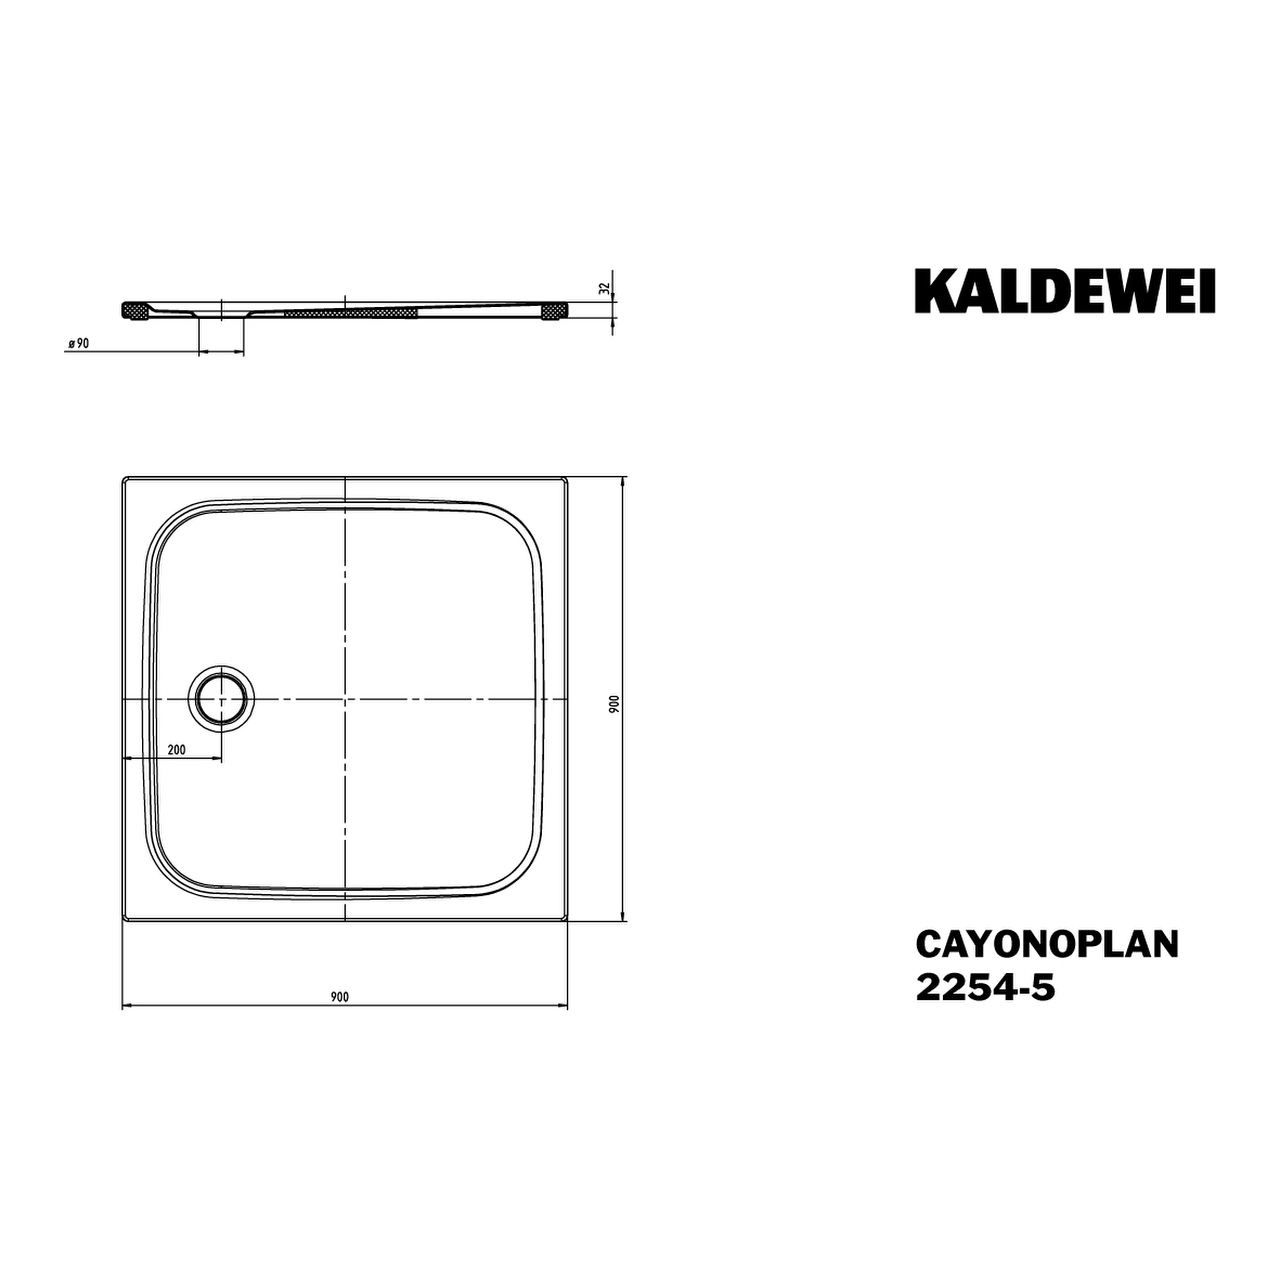 Kaldewei quadrat Duschwanne „Cayonoplan“ 90 × 90 cm in pergamon mit Vollantislip